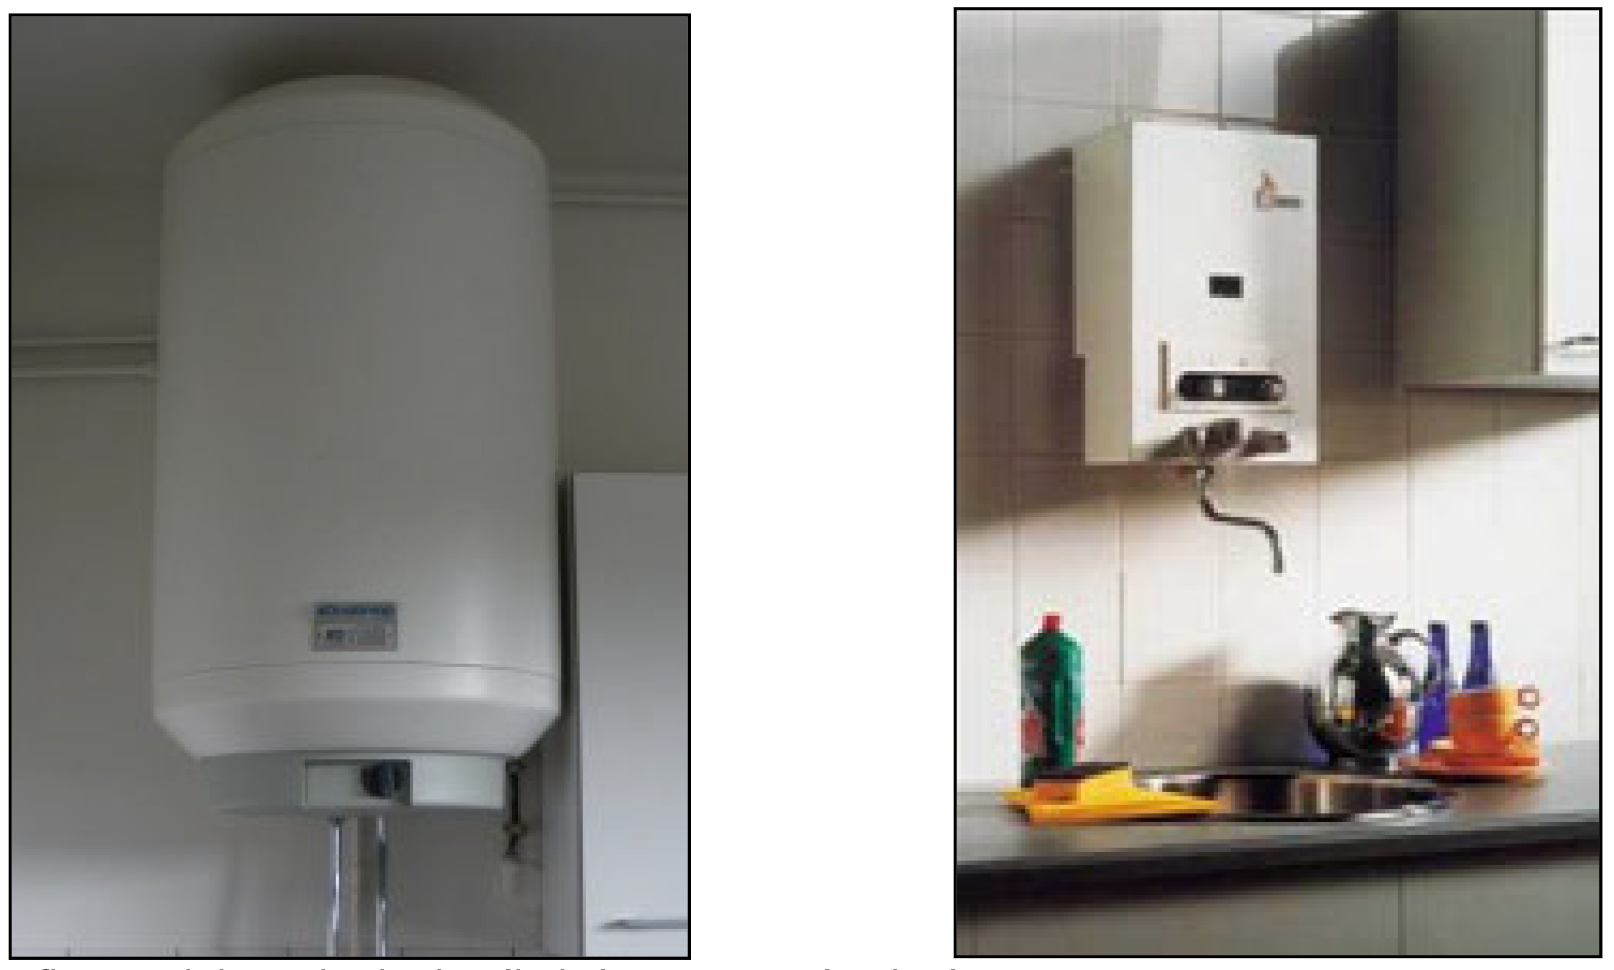 Afb. 12 Elektrische boiler (links) en geiser (rechts)